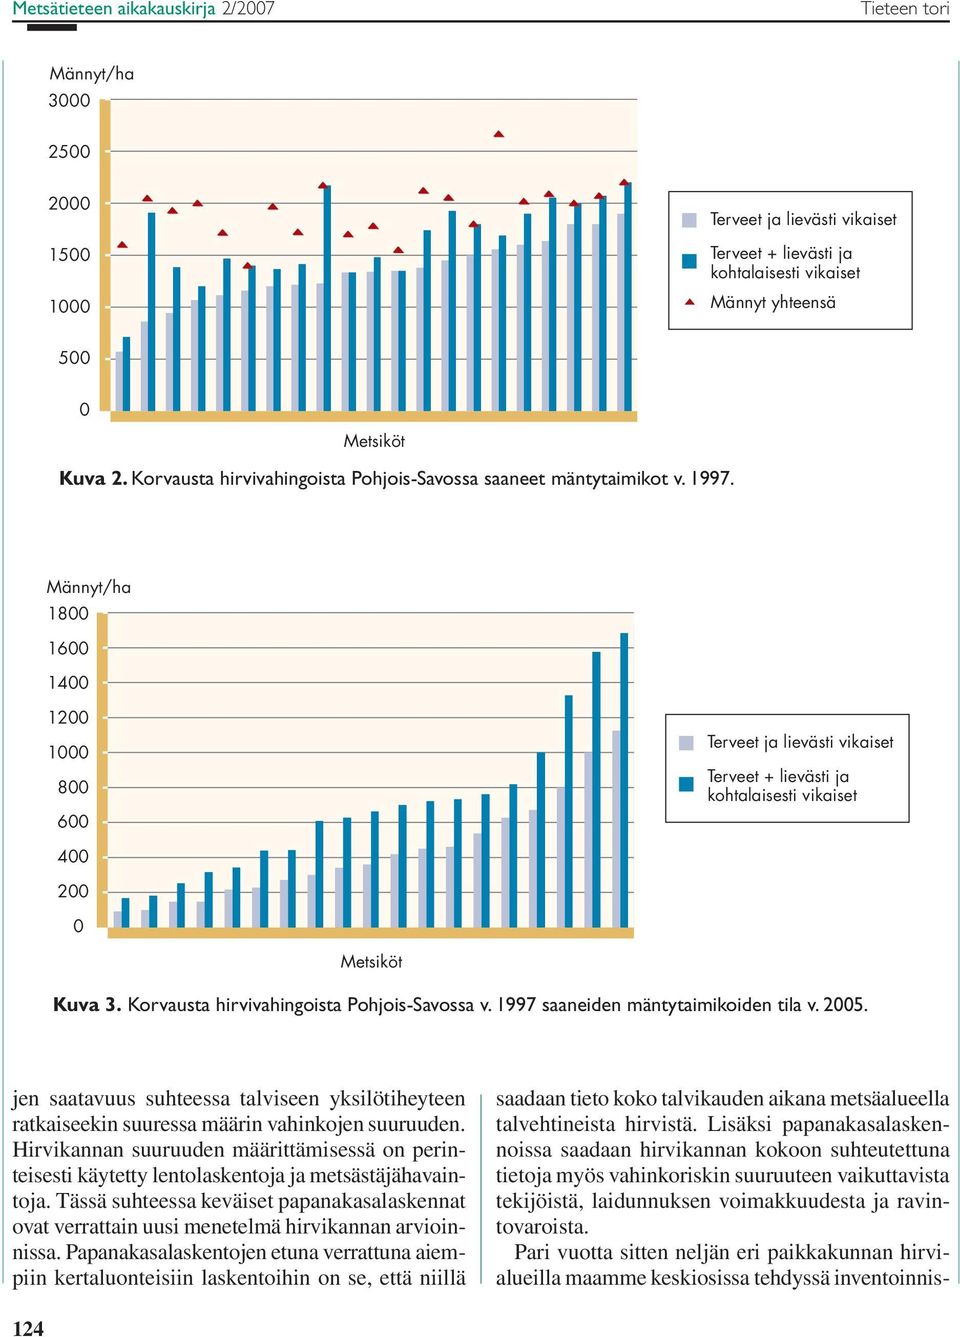 Korvausta hirvivahingoista Pohjois-Savossa v. 1997 saaneiden mäntytaimikoiden tila v. 25. jen saatavuus suhteessa talviseen yksilötiheyteen ratkaiseekin suuressa määrin vahinkojen suuruuden.